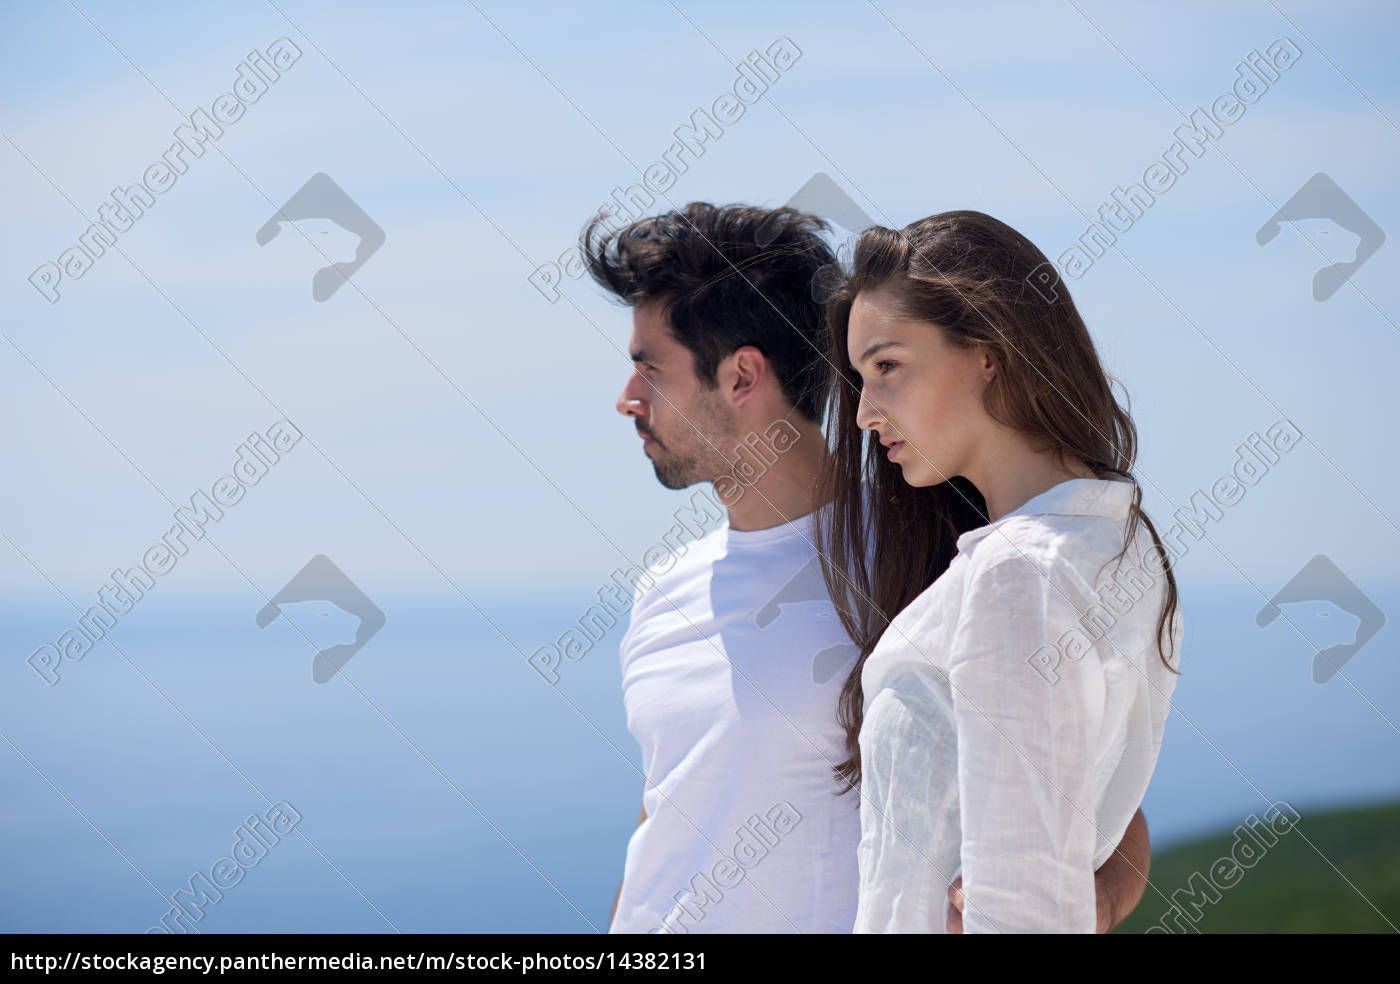 Gluckliche Junge Romantische Paare Haben Spass Arelax Lizenzfreies Bild Bildagentur Panthermedia